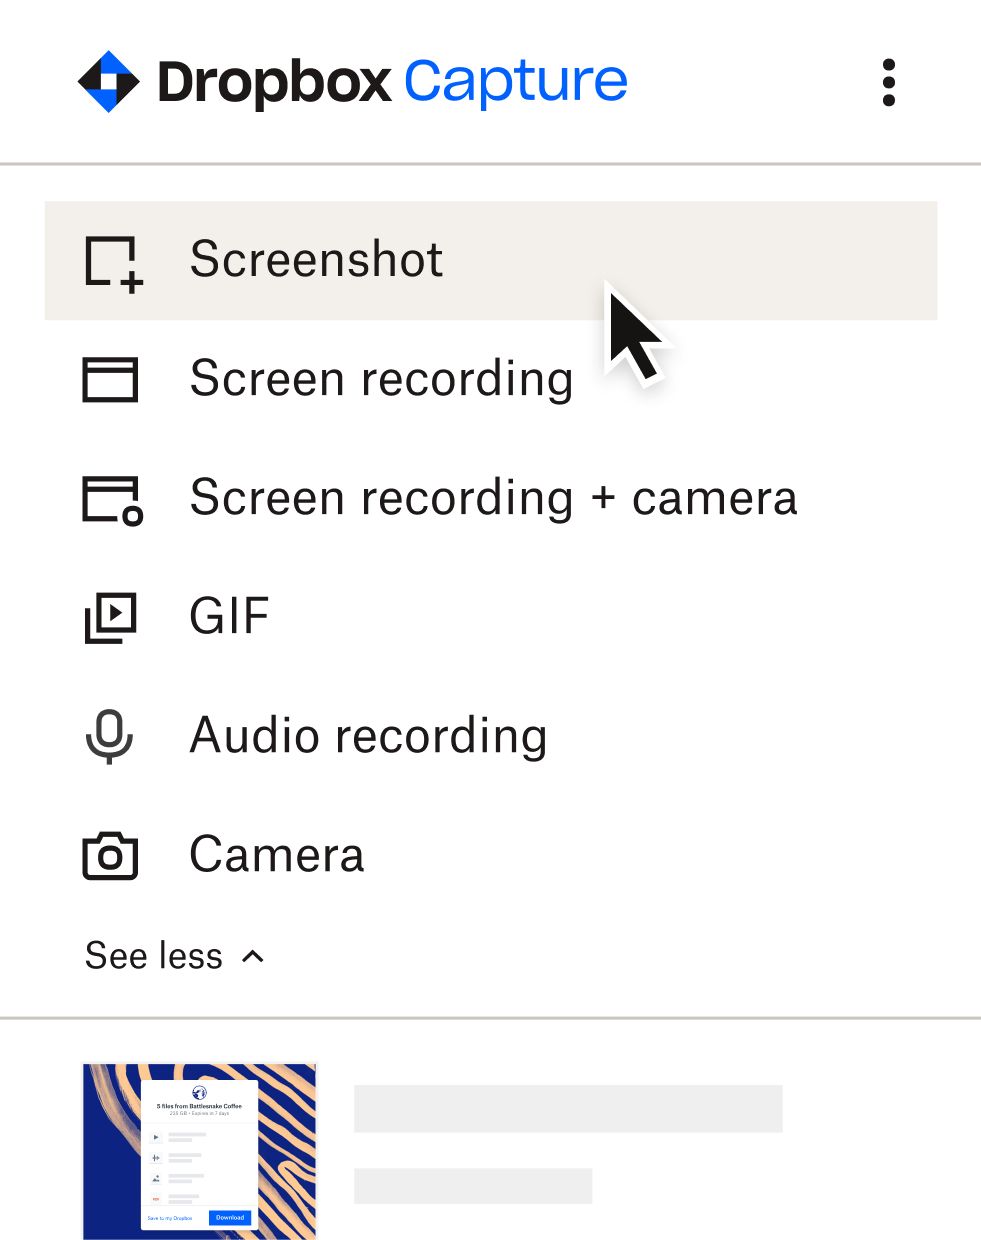 User selecting ‘screenshot’ in the Capture menu